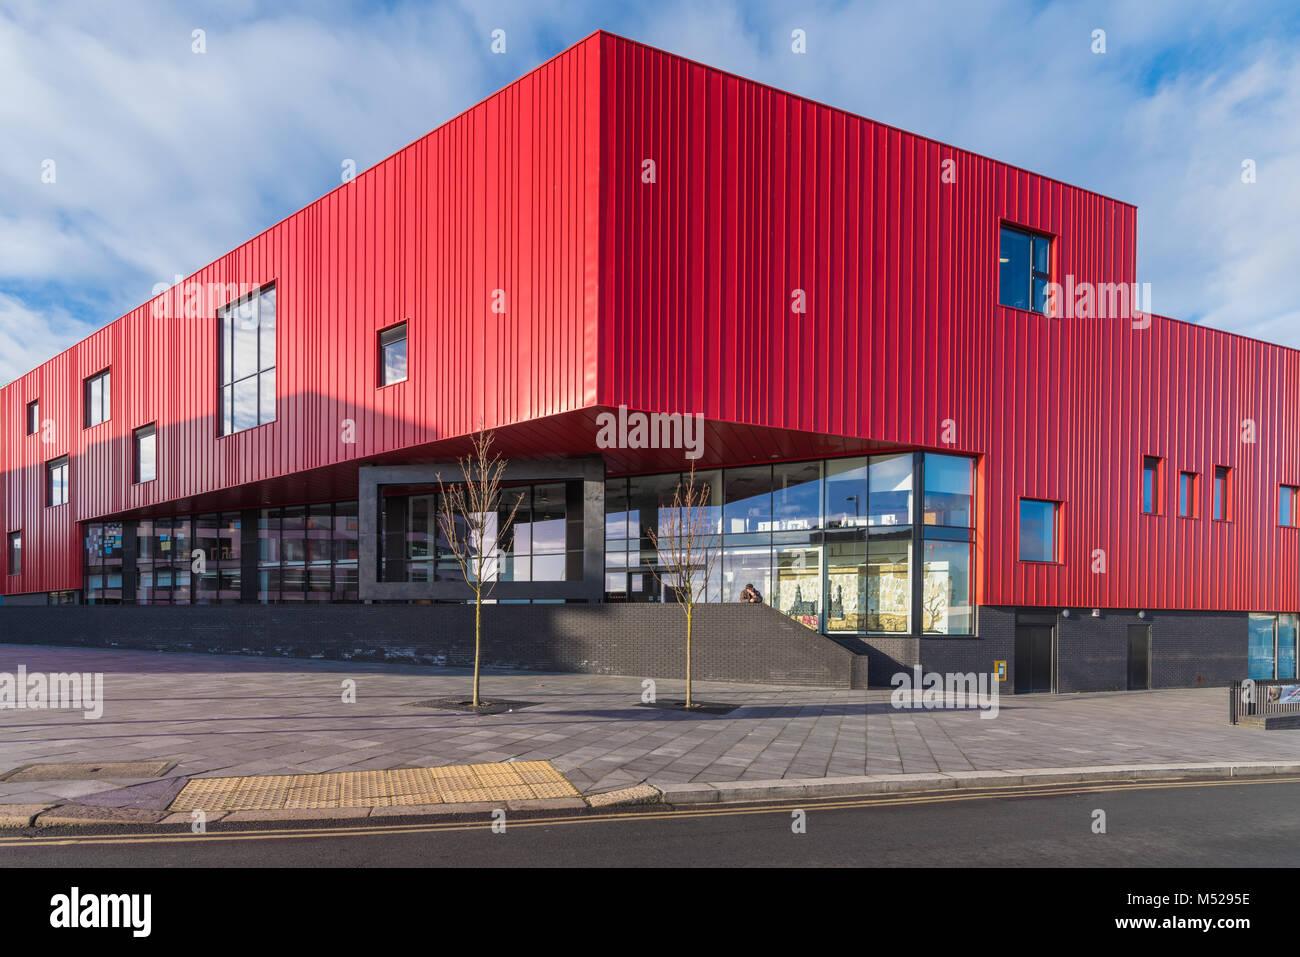 Die Plymouth School of Creative Arts, bekannt als das Rote Haus Architekten Feildens Clegg Bradley Stockfoto